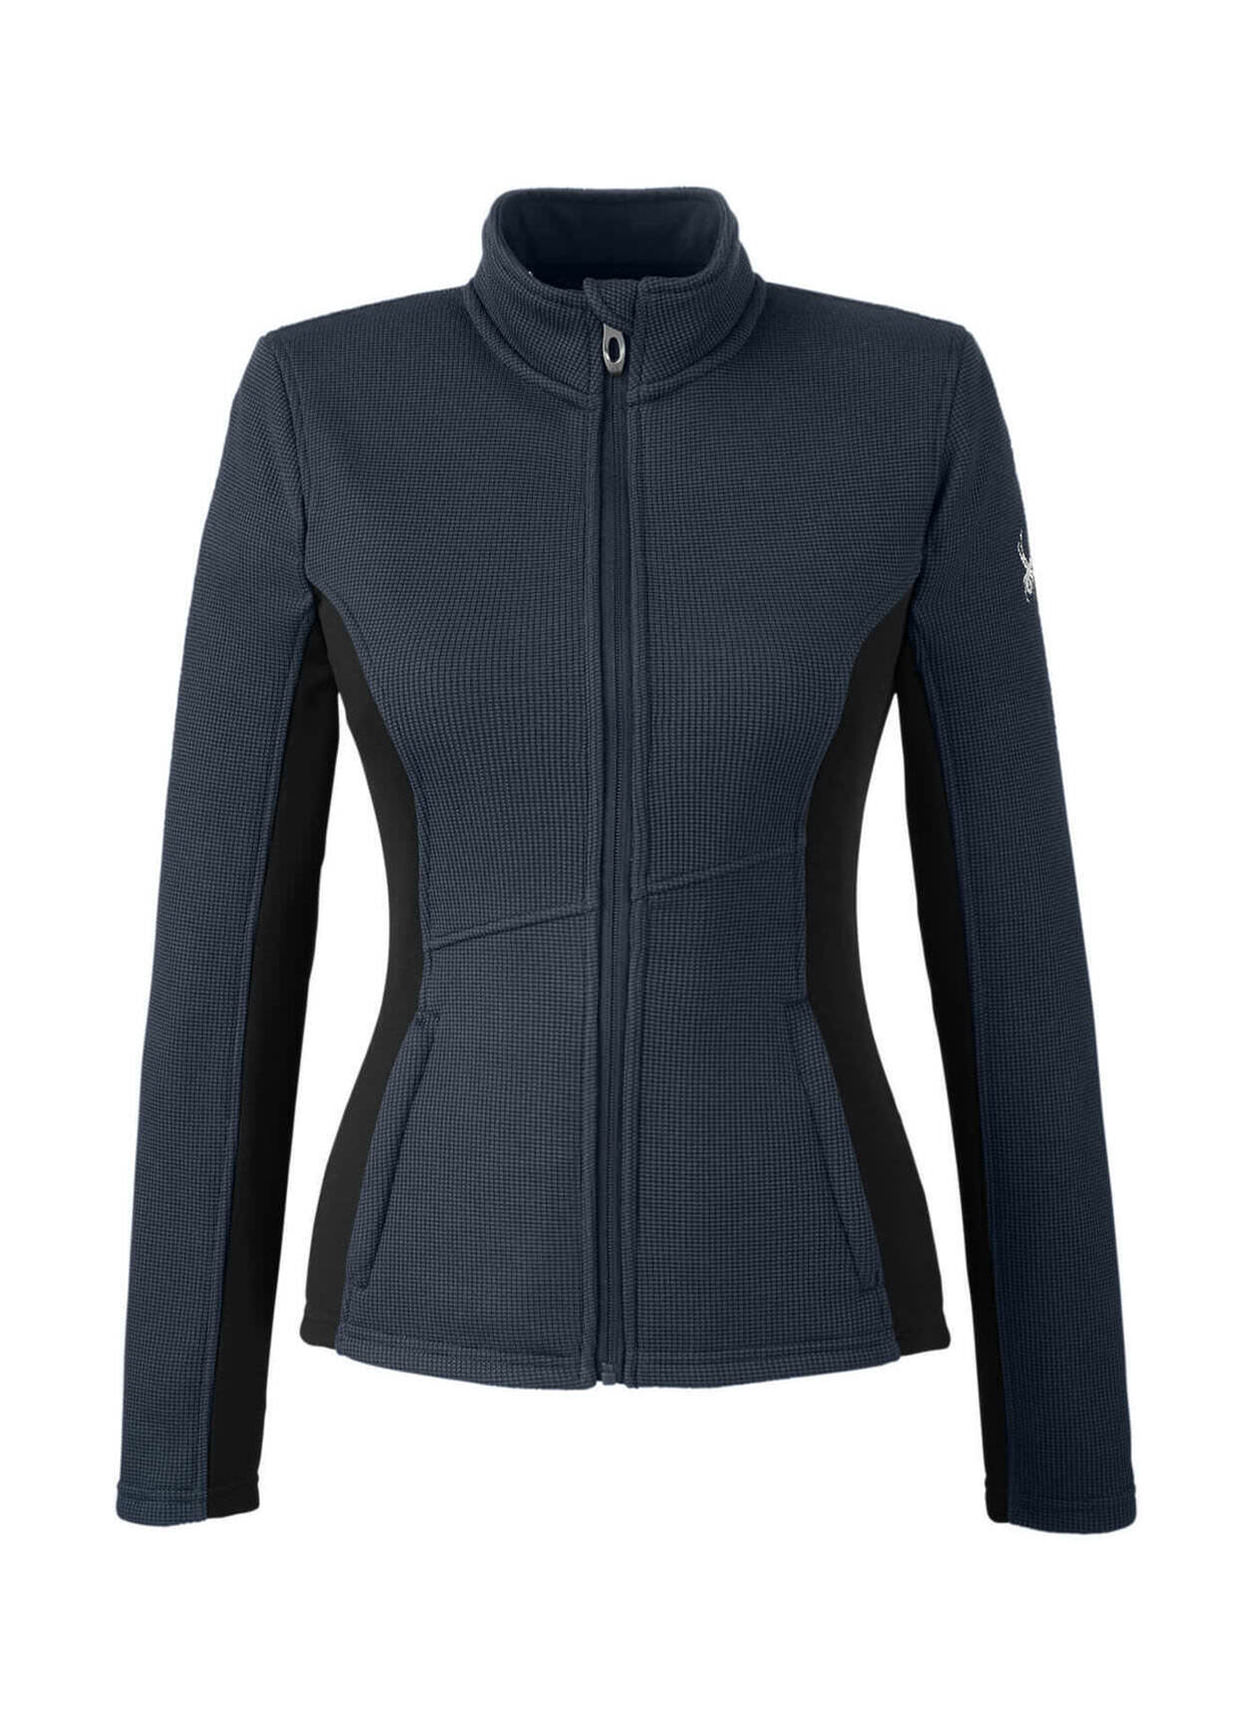 Spyder Women's Frontier / Black / White Constant Sweater Fleece Jacket ...